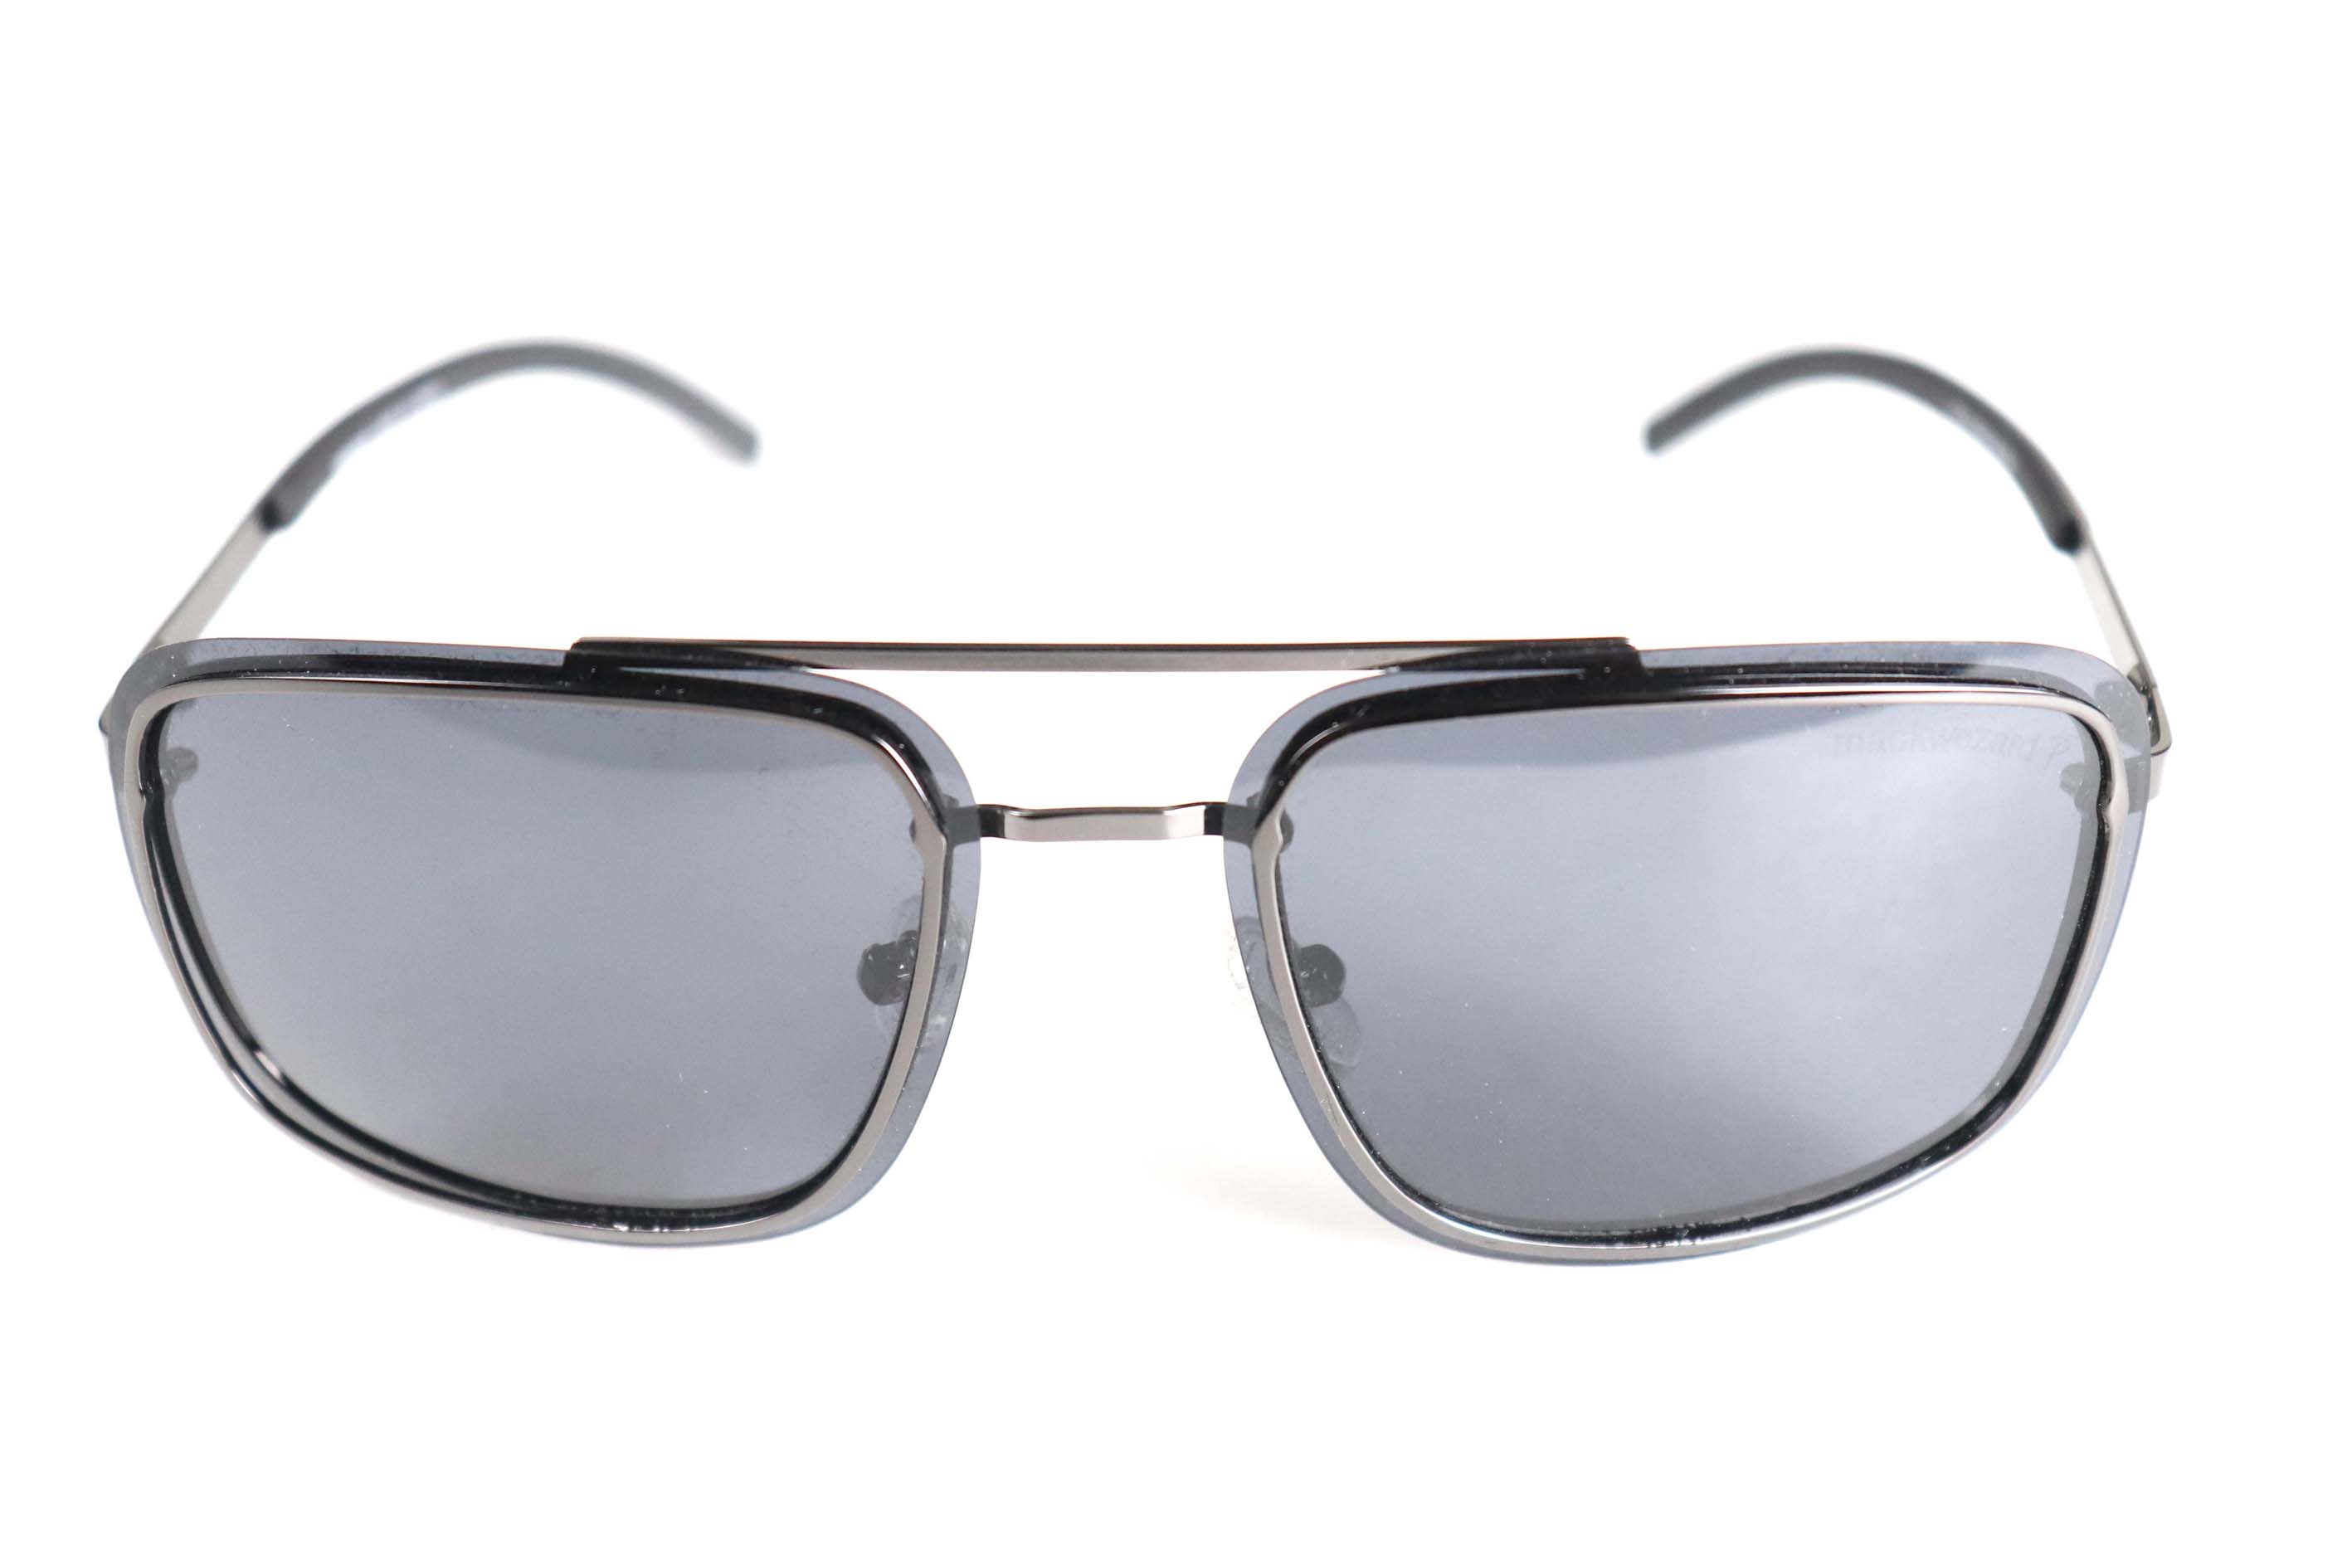 Mackwezard Sunglasses-1821-c2-63-15-135